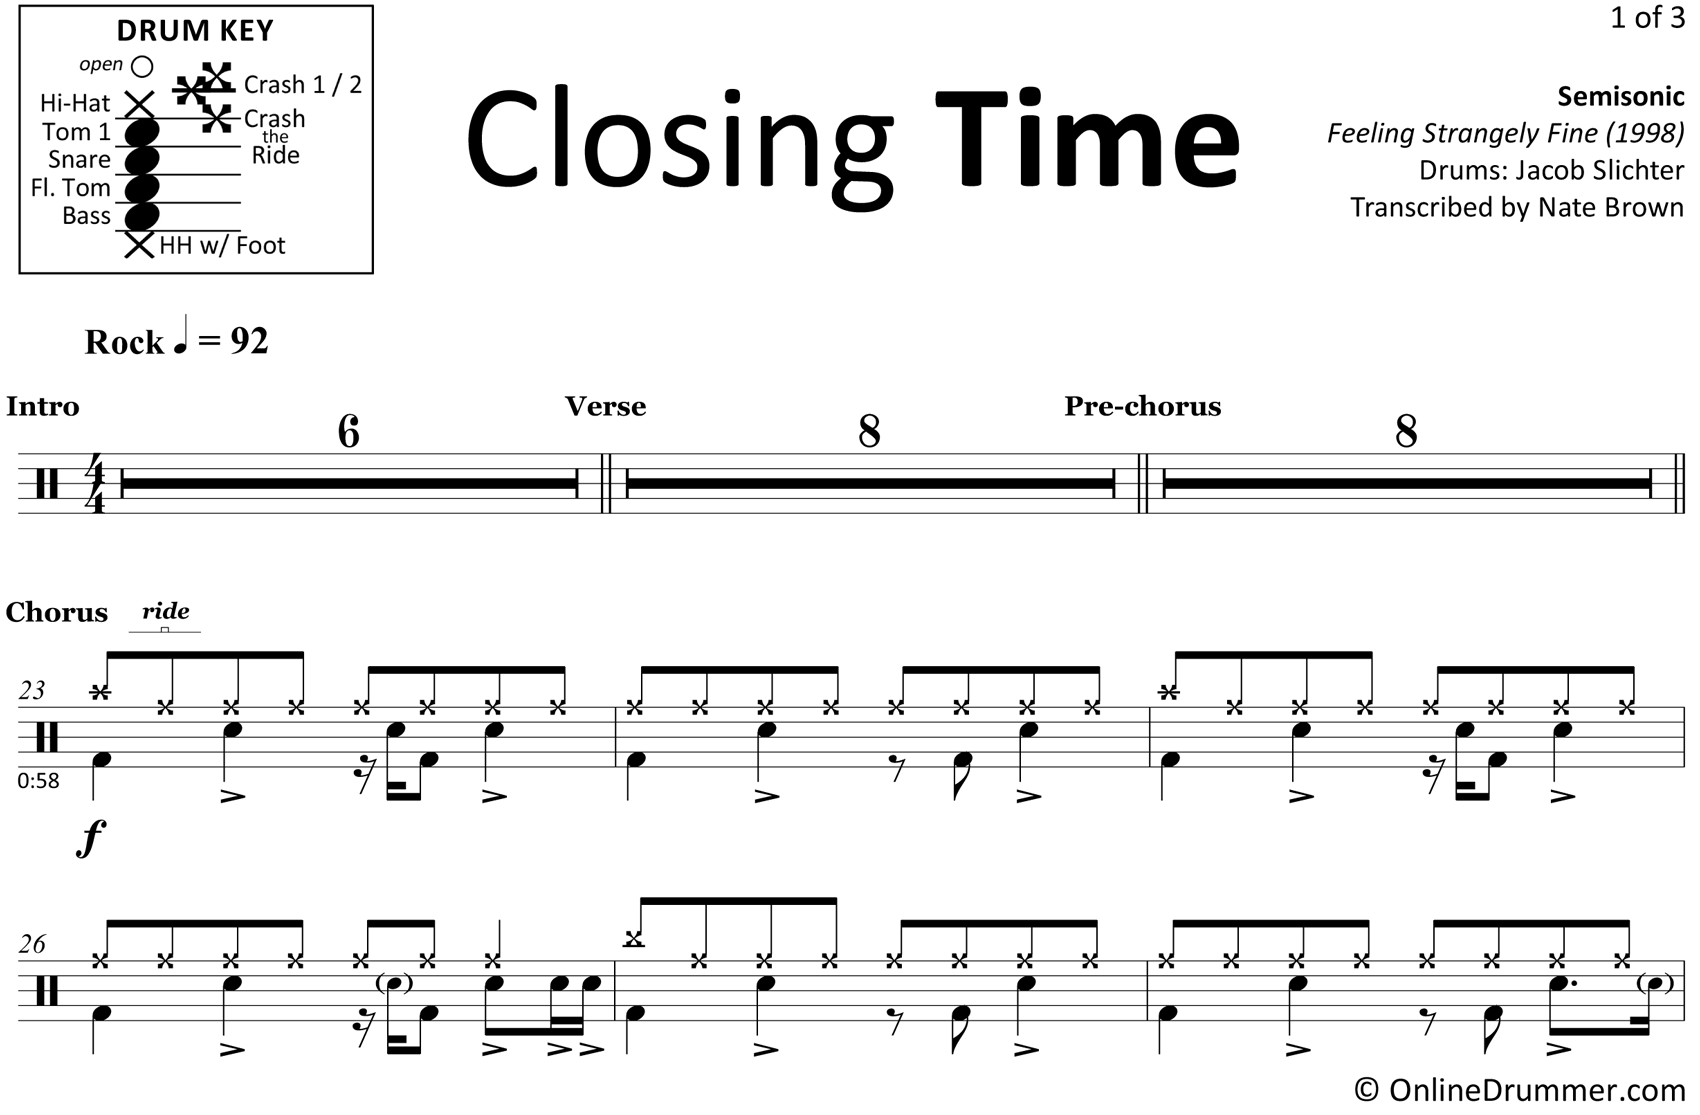 Closing Time - Semisonic - Drum Sheet Music